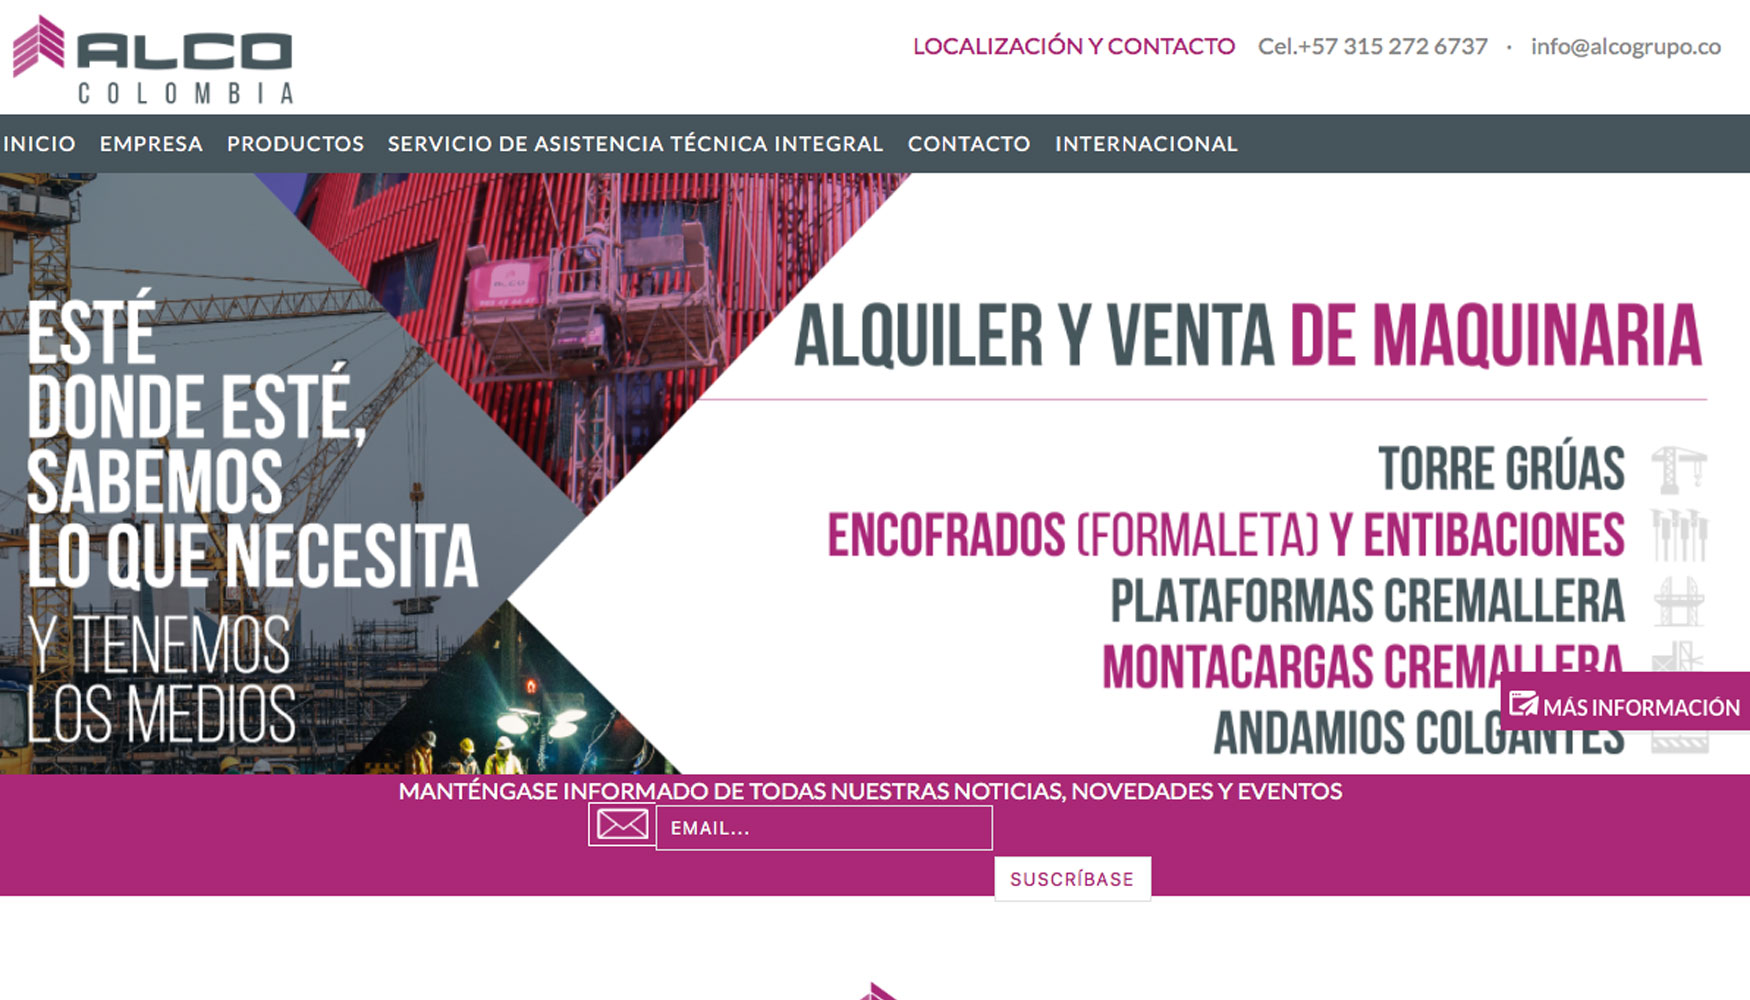 Pgina web de Alco Grupo Colombia